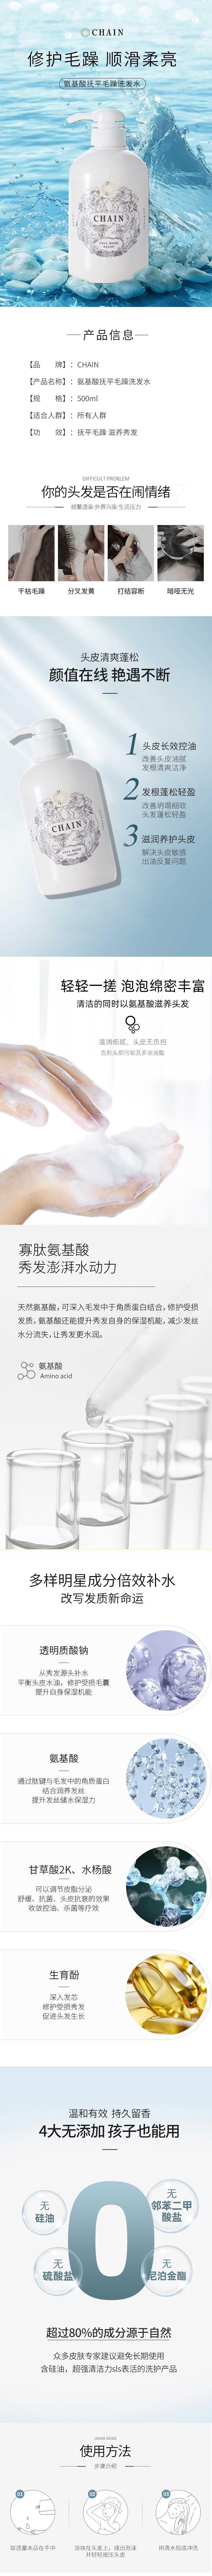 【日本直邮】CHAIN 日本高端沙龙必备护理级别洗发水500ml 宝宝可用